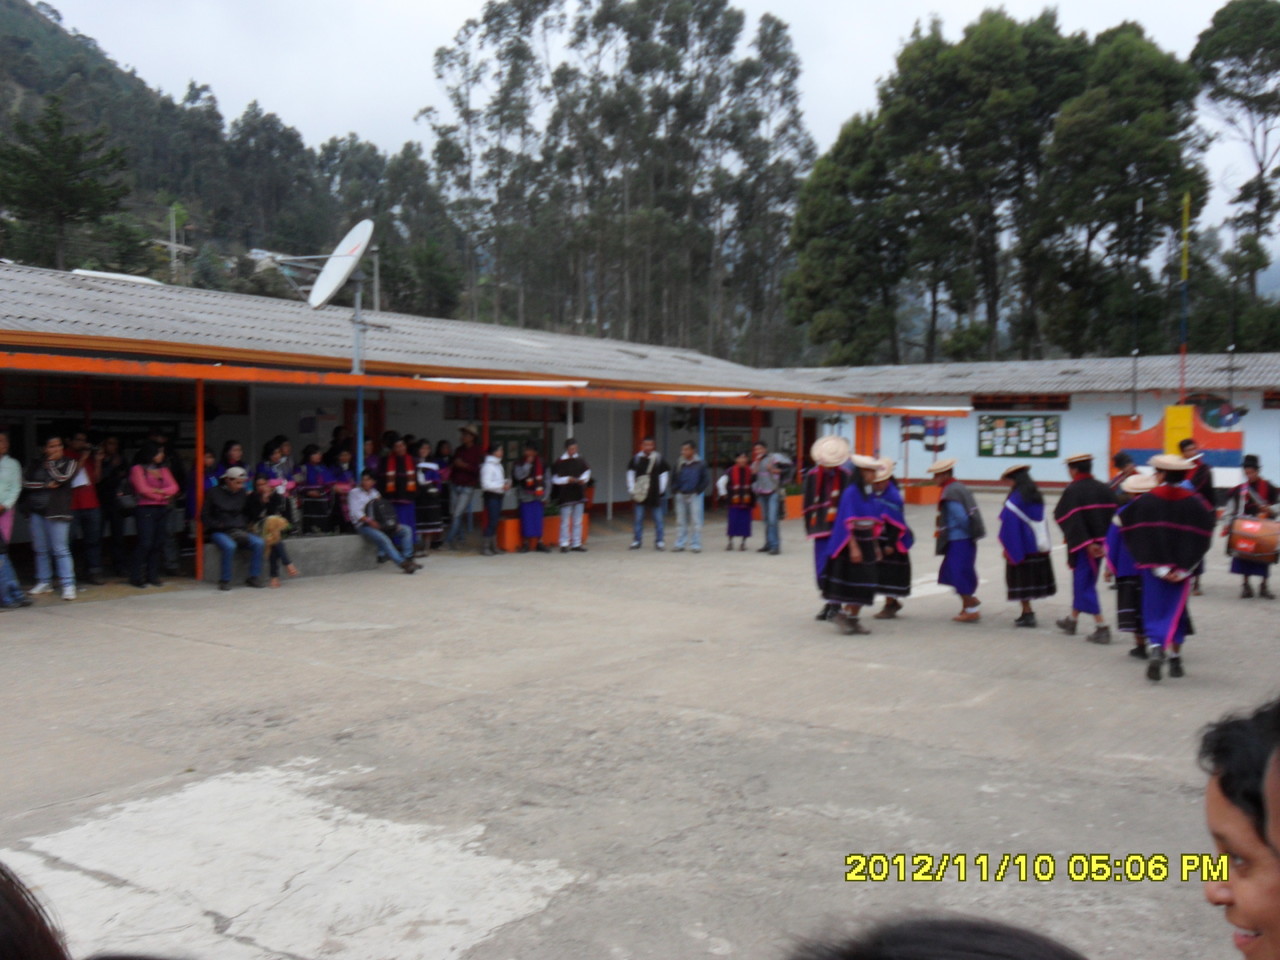 Danzas en el Reencuentro Educación Ancestral en Guampia (2012)